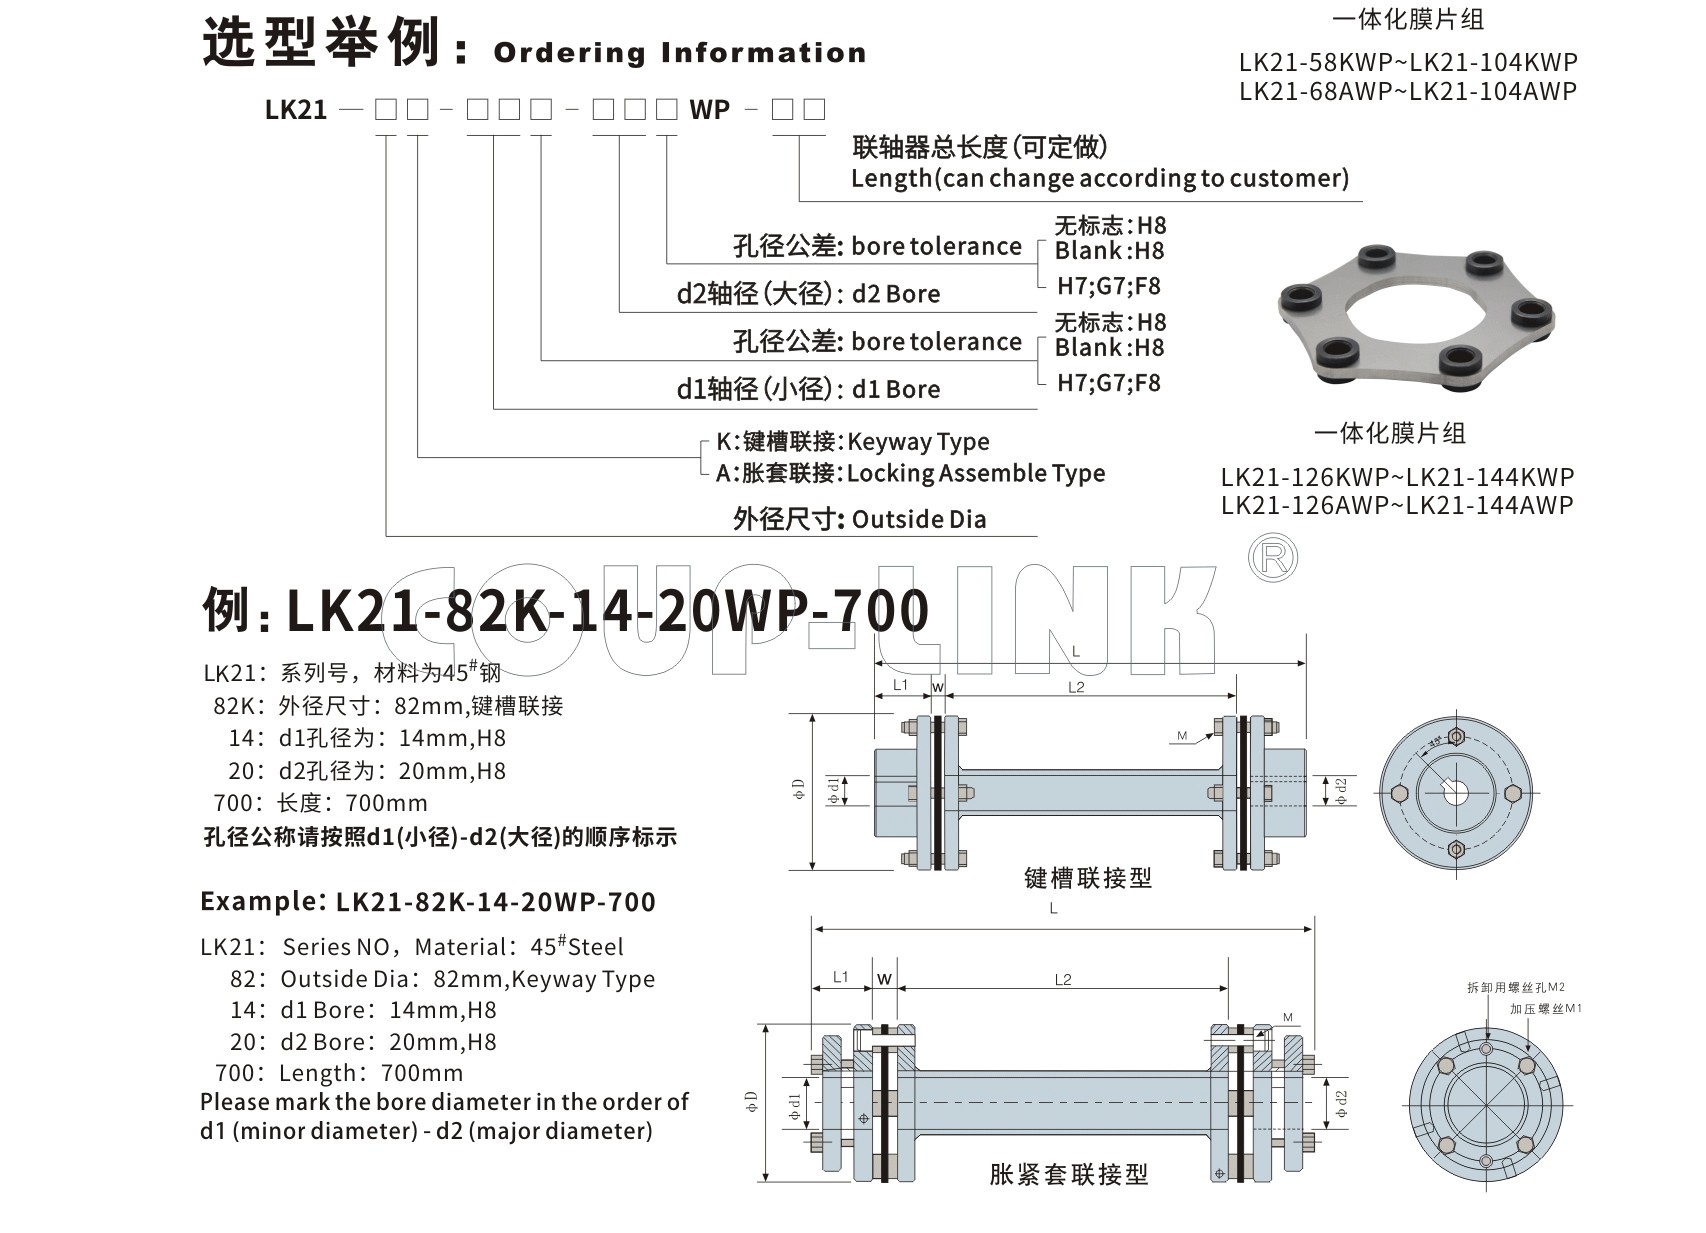 长跨距胀套膜片联轴器LK21系列-联轴器厂家